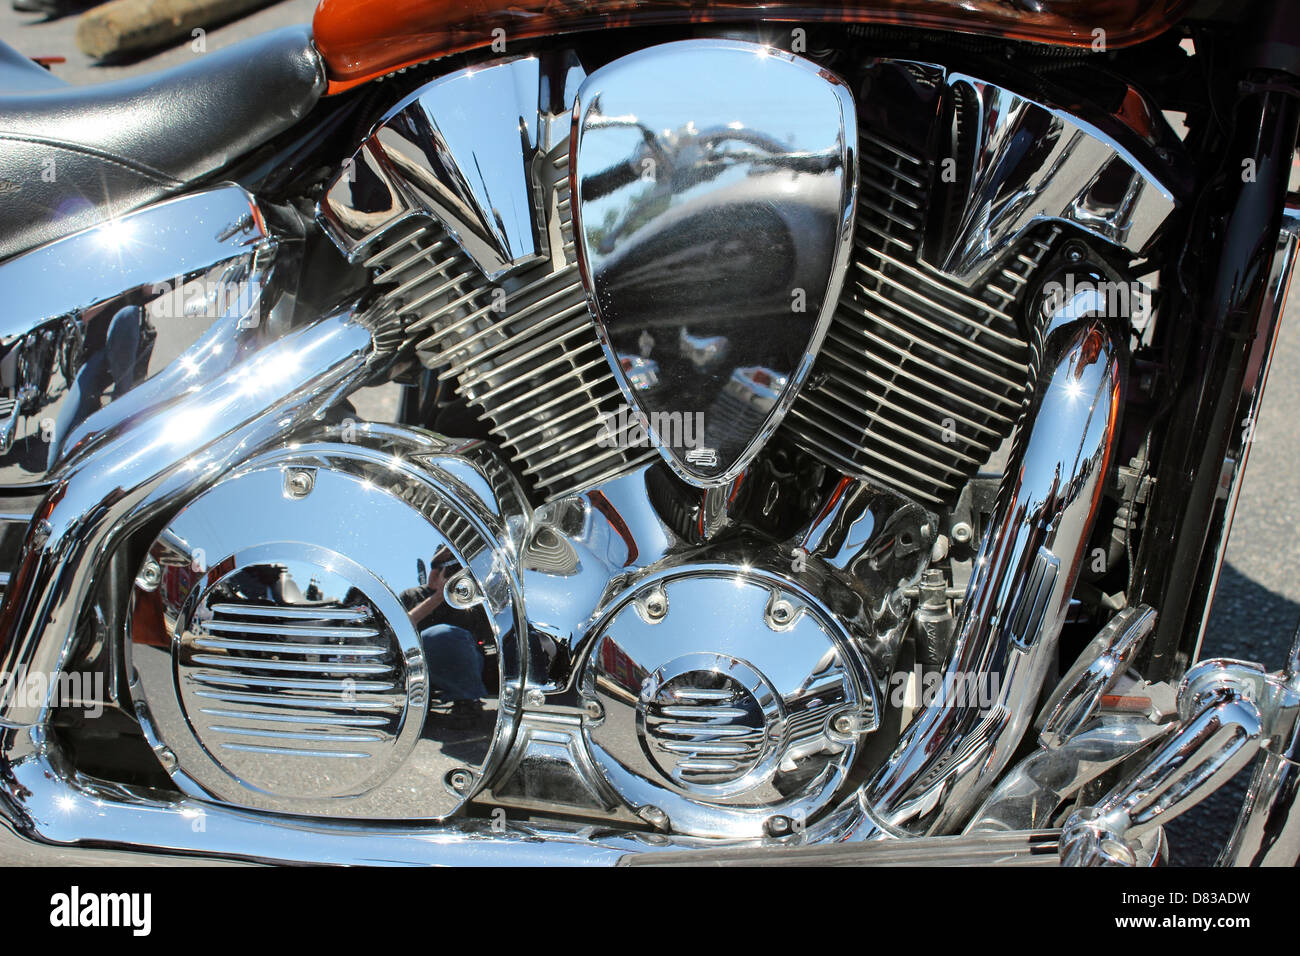 Une Harley Davidson moteur chrome Banque D'Images